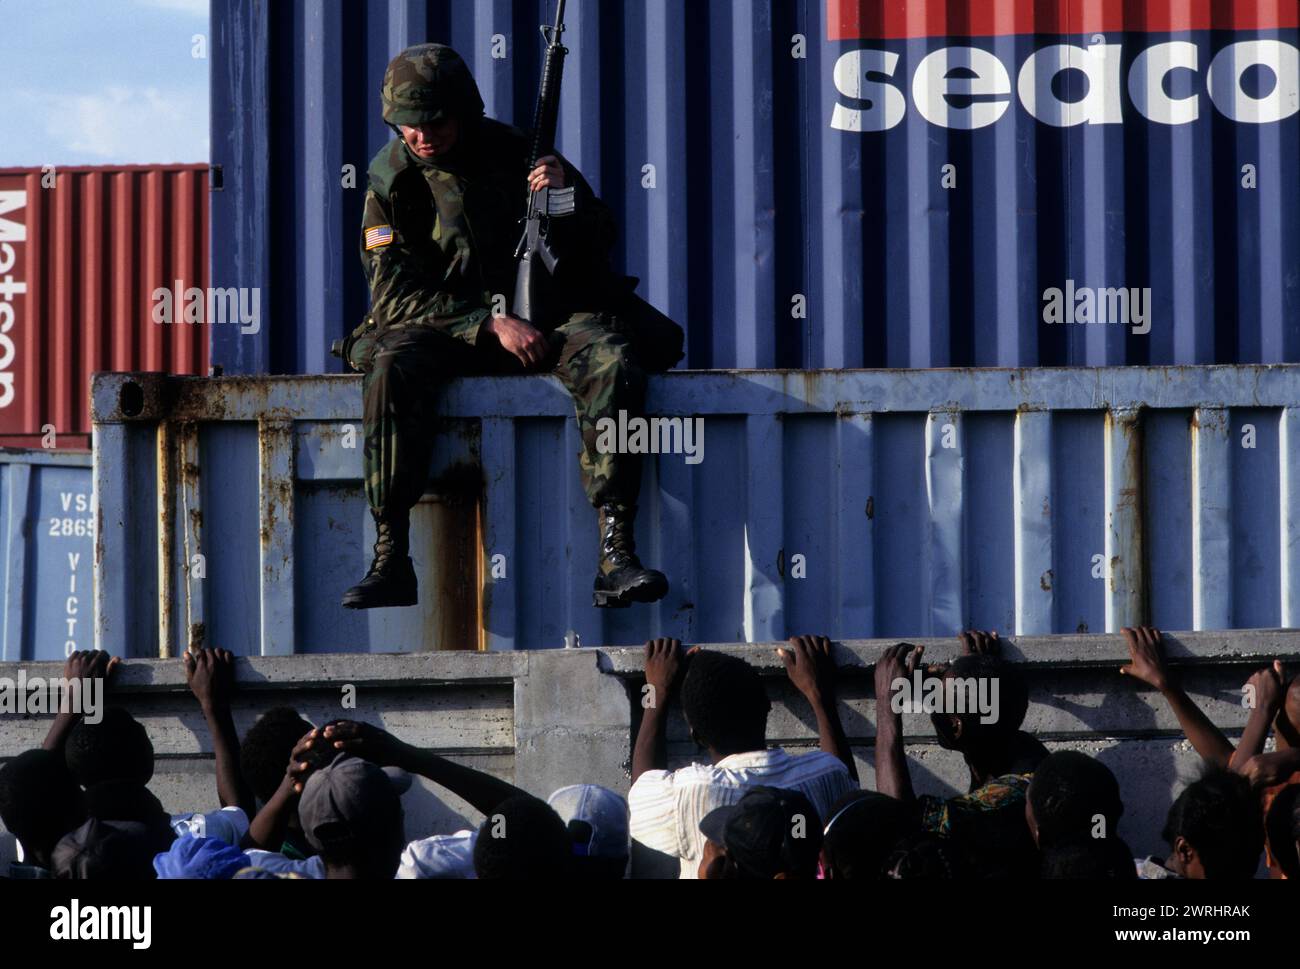 Amerikanische Truppen in Port-au-Prince, Haiti, helfen bei der Wiederherstellung von Ordnung und Demokratie während der politischen Turbulenzen im Jahr 1994. Foto: Wesley Bocxe Stockfoto